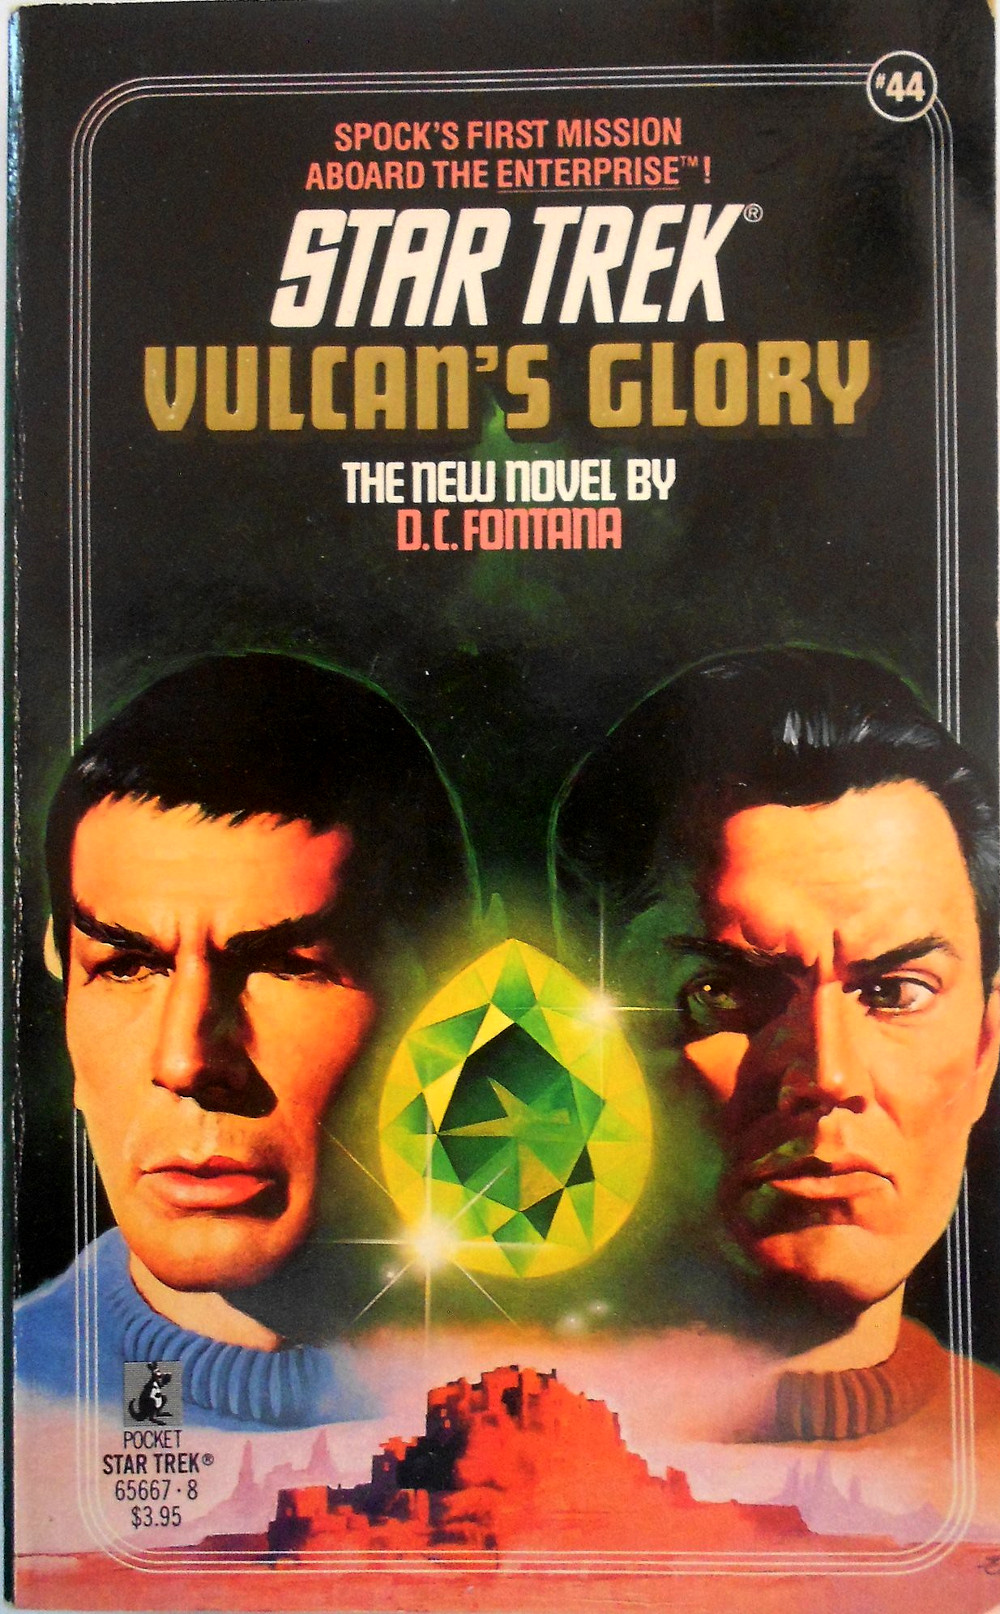 "Vulcan's Glory"